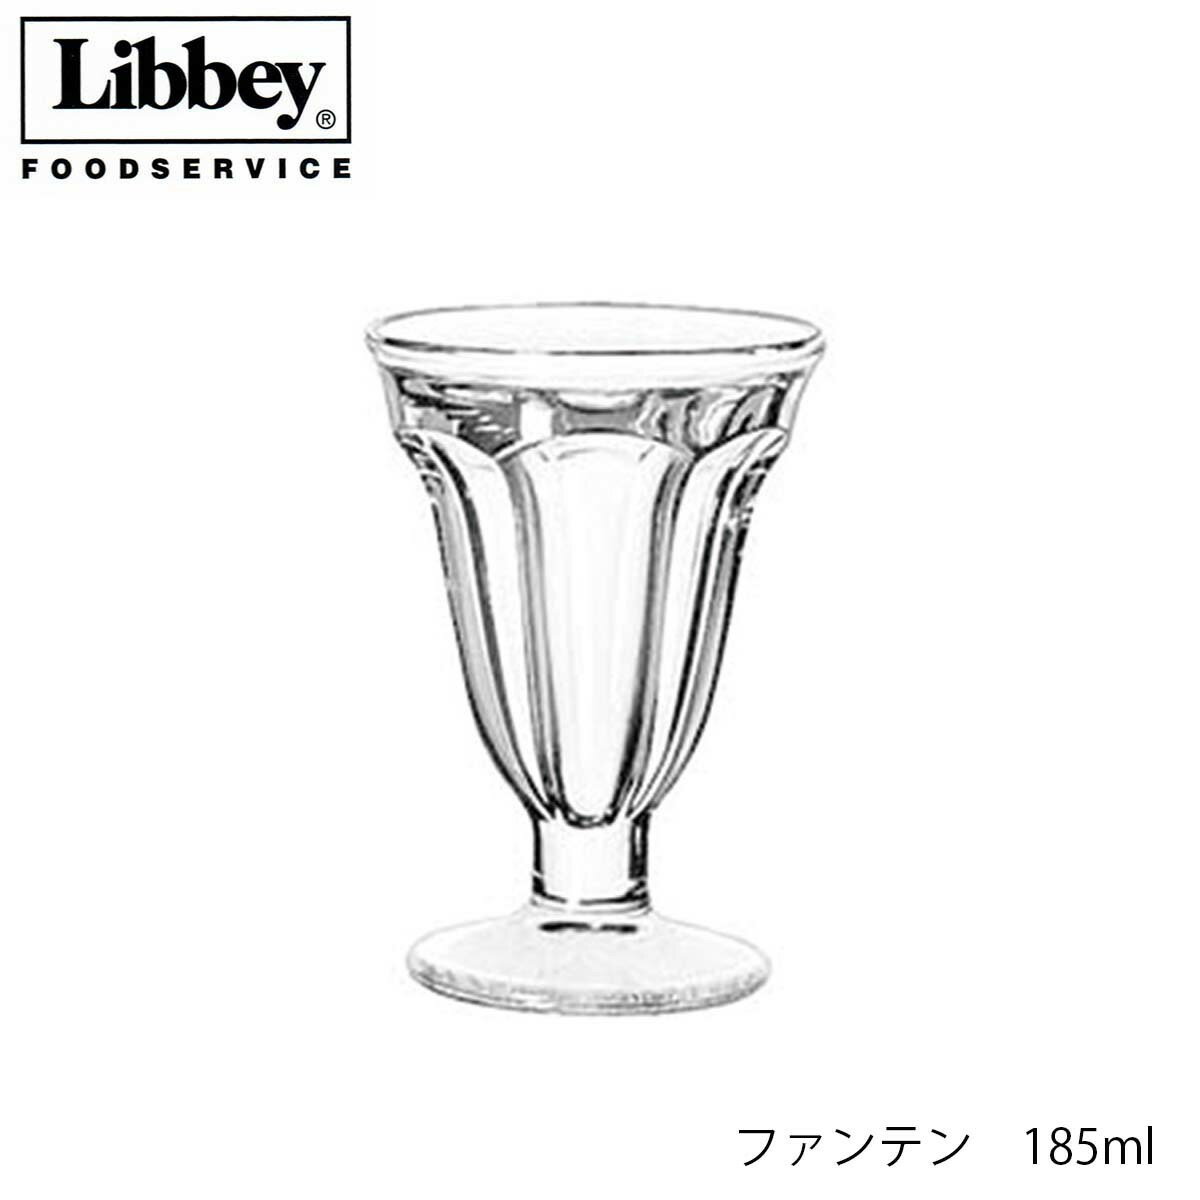 口径101mm　高さ146mm 容量　185ml　満杯容量 素材　ソーダガラス 【Libbey リビー】 1892年、アメリカに設立 アメリカ国内で、フードサービス業への提供を大きく展開。 ブランド名を世界中に広める。 2007年、中国工場を設立し生産開始。世界中にブランドイメージを確立させています。Libbey リビー ファンテン 185ml パフェグラス ソーダガラス製 10